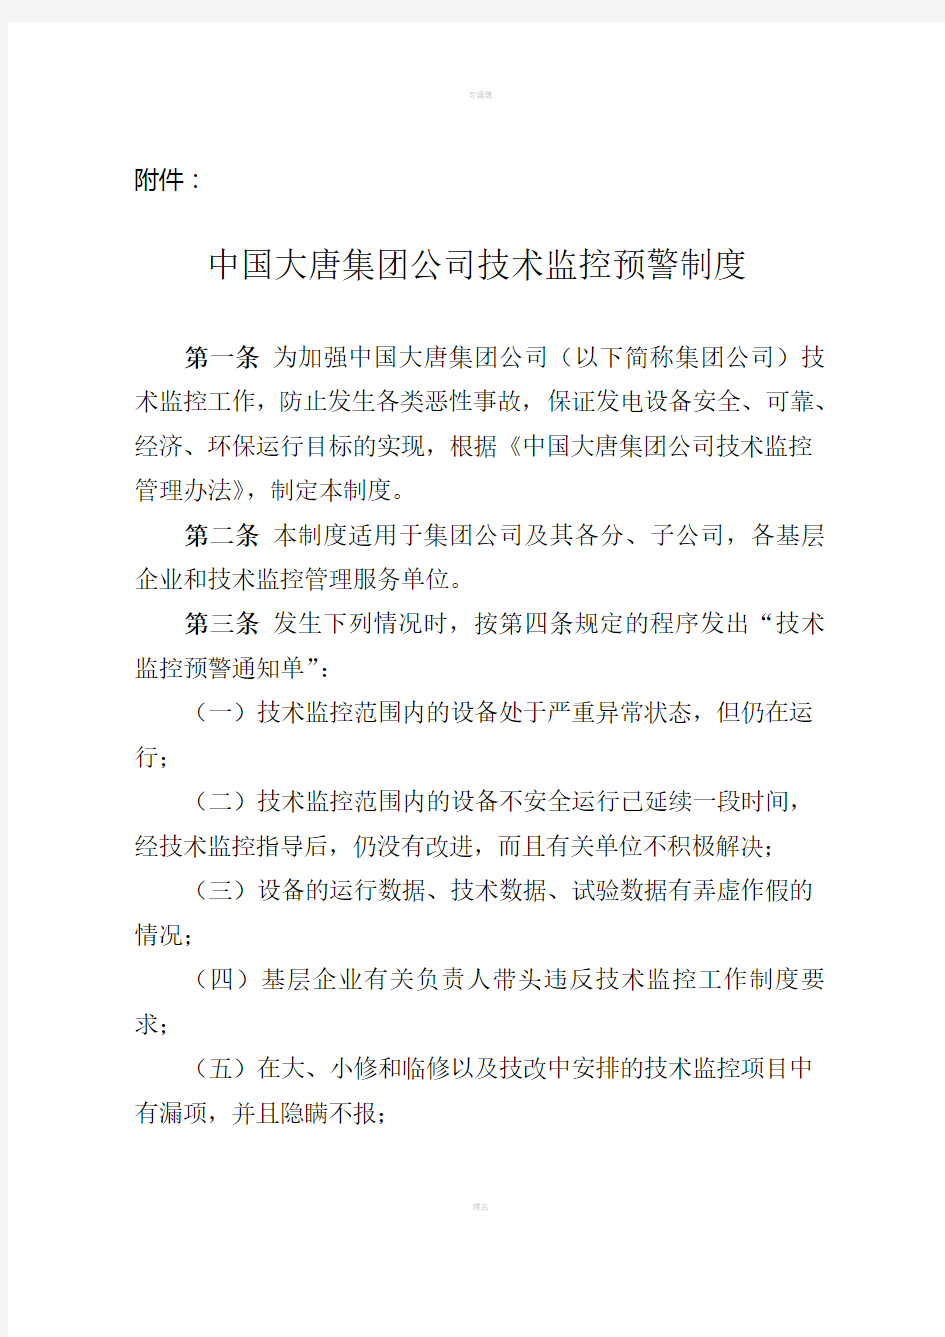 中国大唐集团公司技术监控预警制度2007年版